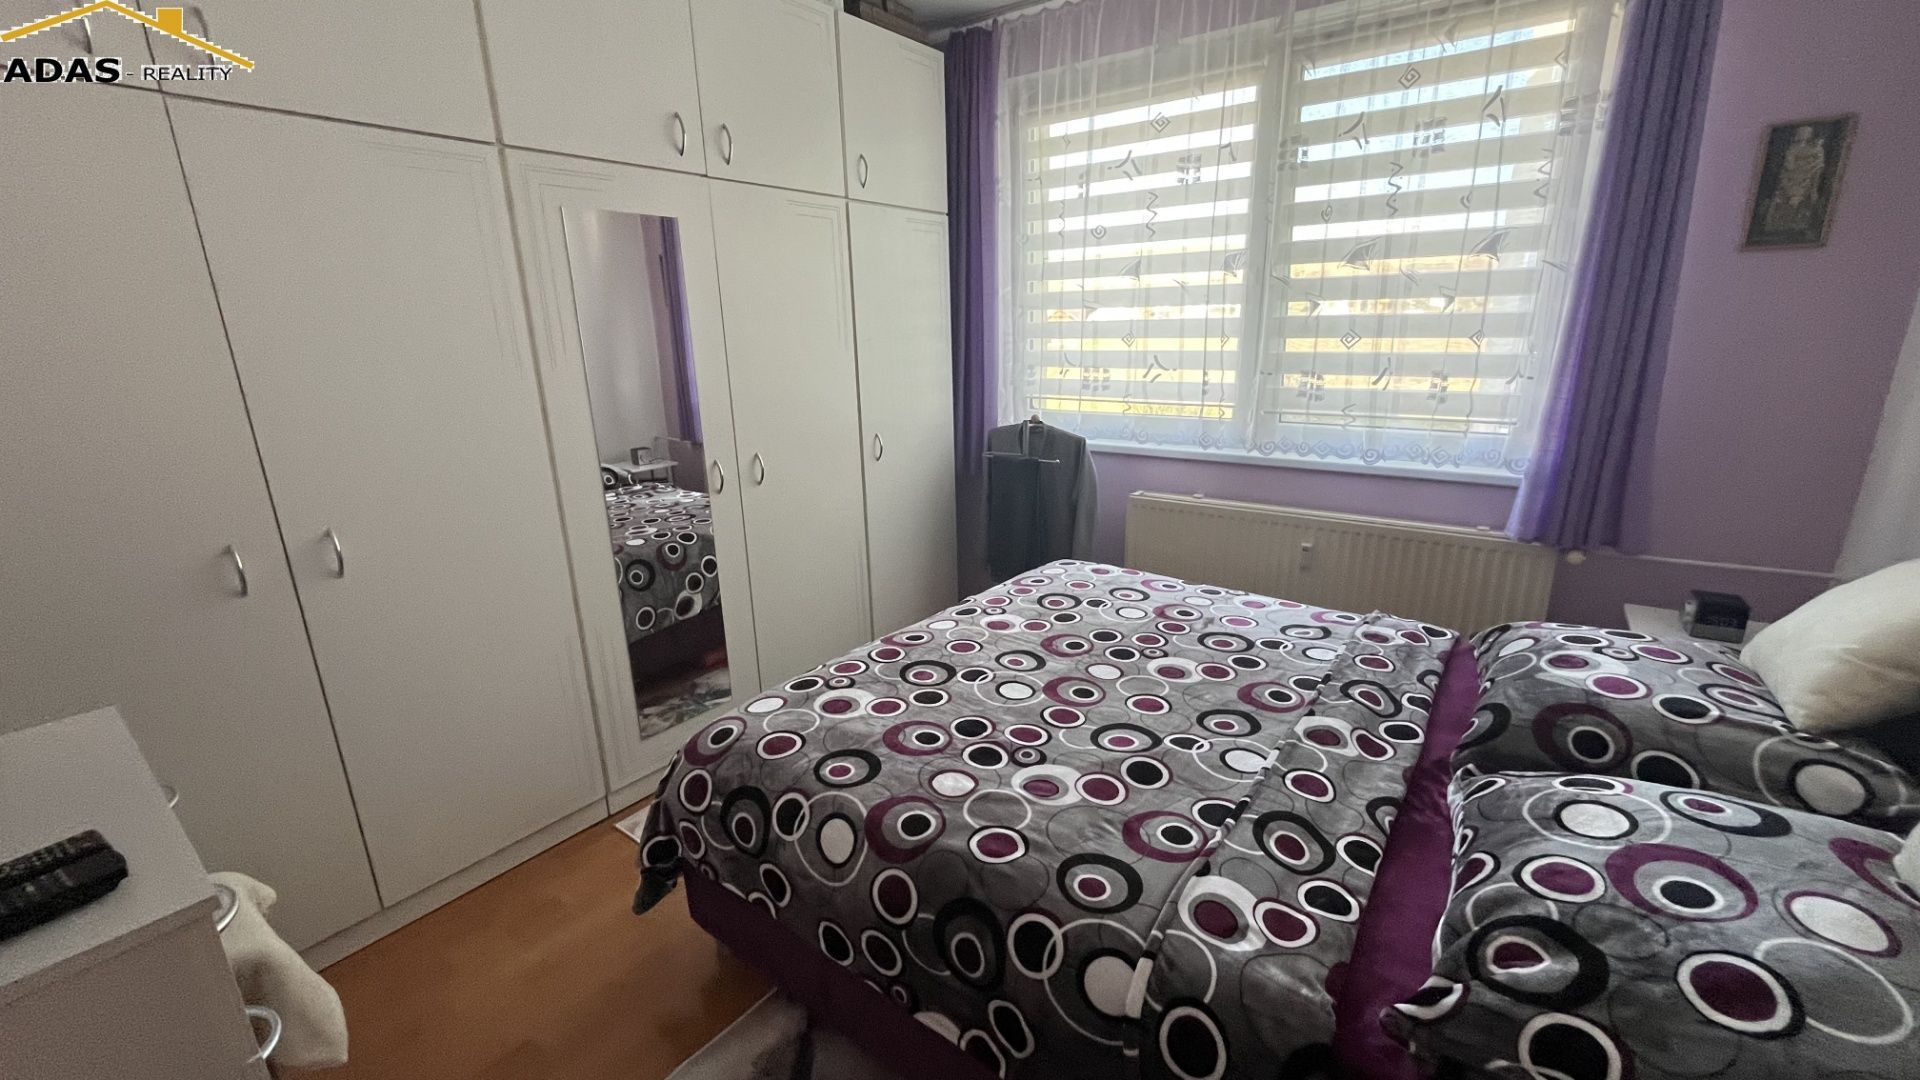 REZERVOVANÉ! Ponúkame na predaj priestranný 3- izbový byt s balkónom nachadzajúci sa v Kežmarku na ul. Levočská.